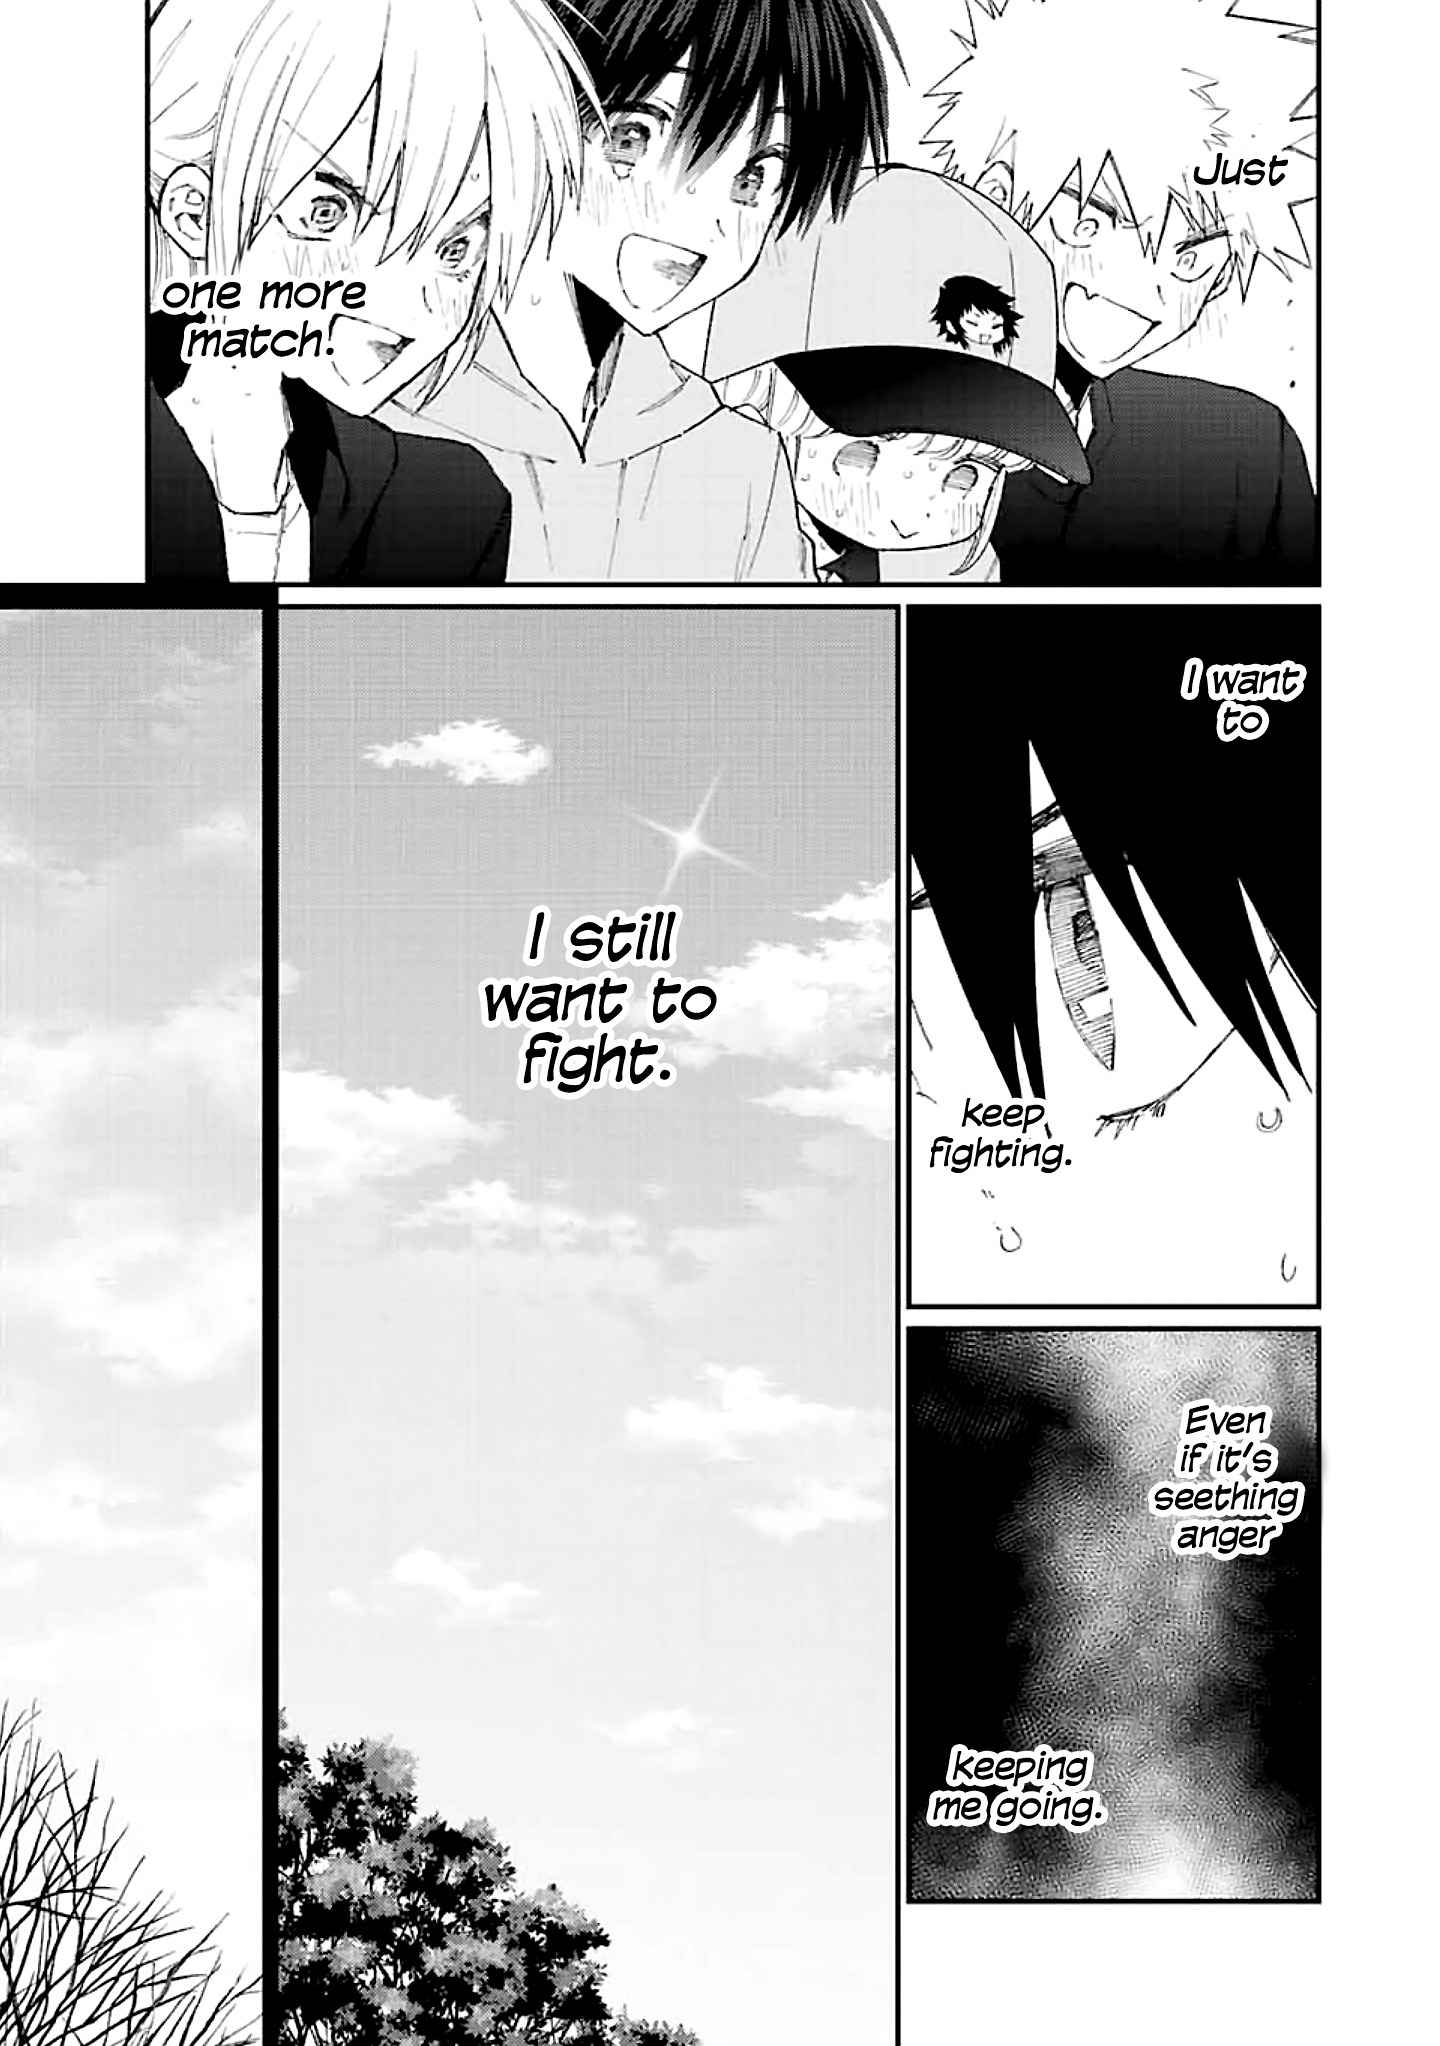 Shikimori’s not just a cutie Chapter 152